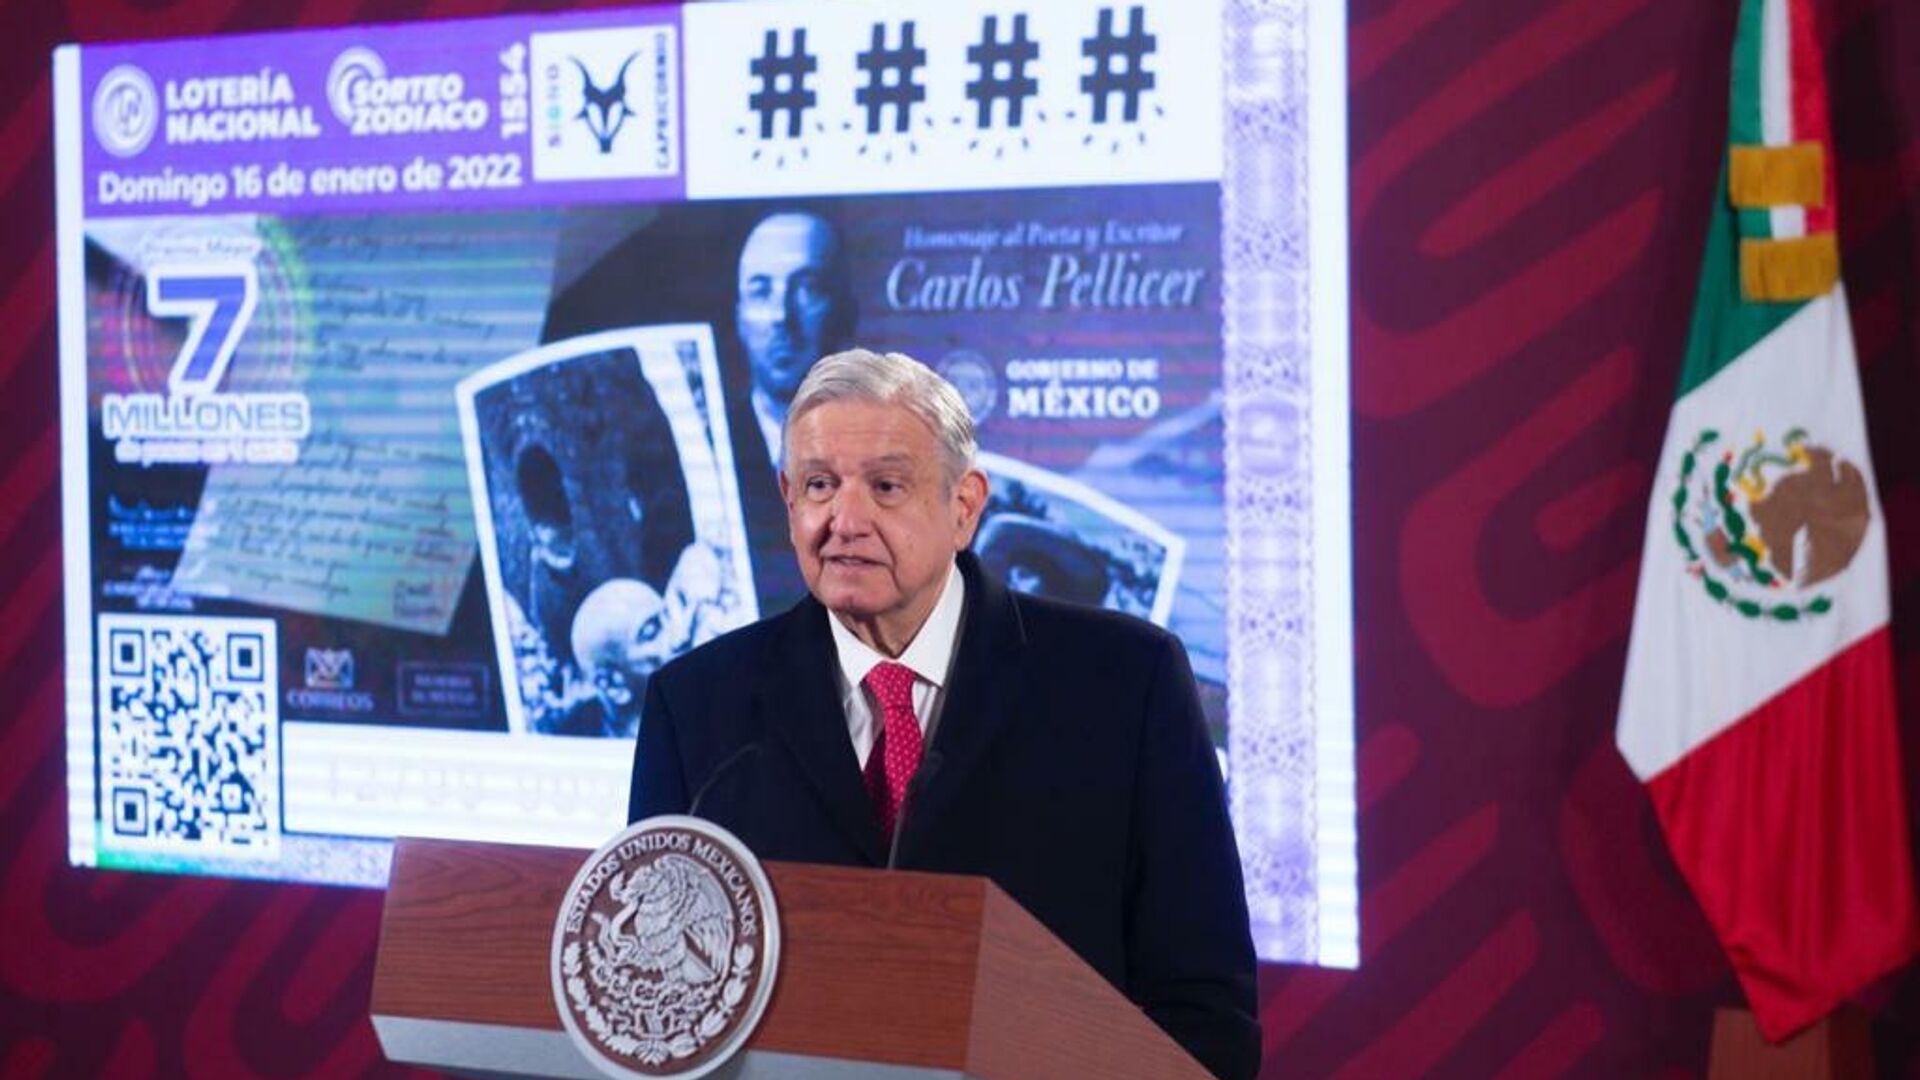 Andrés Manuel López Obrador recuerda al poeta tabasqueño Carlos Pellicer. - Sputnik Mundo, 1920, 07.01.2022